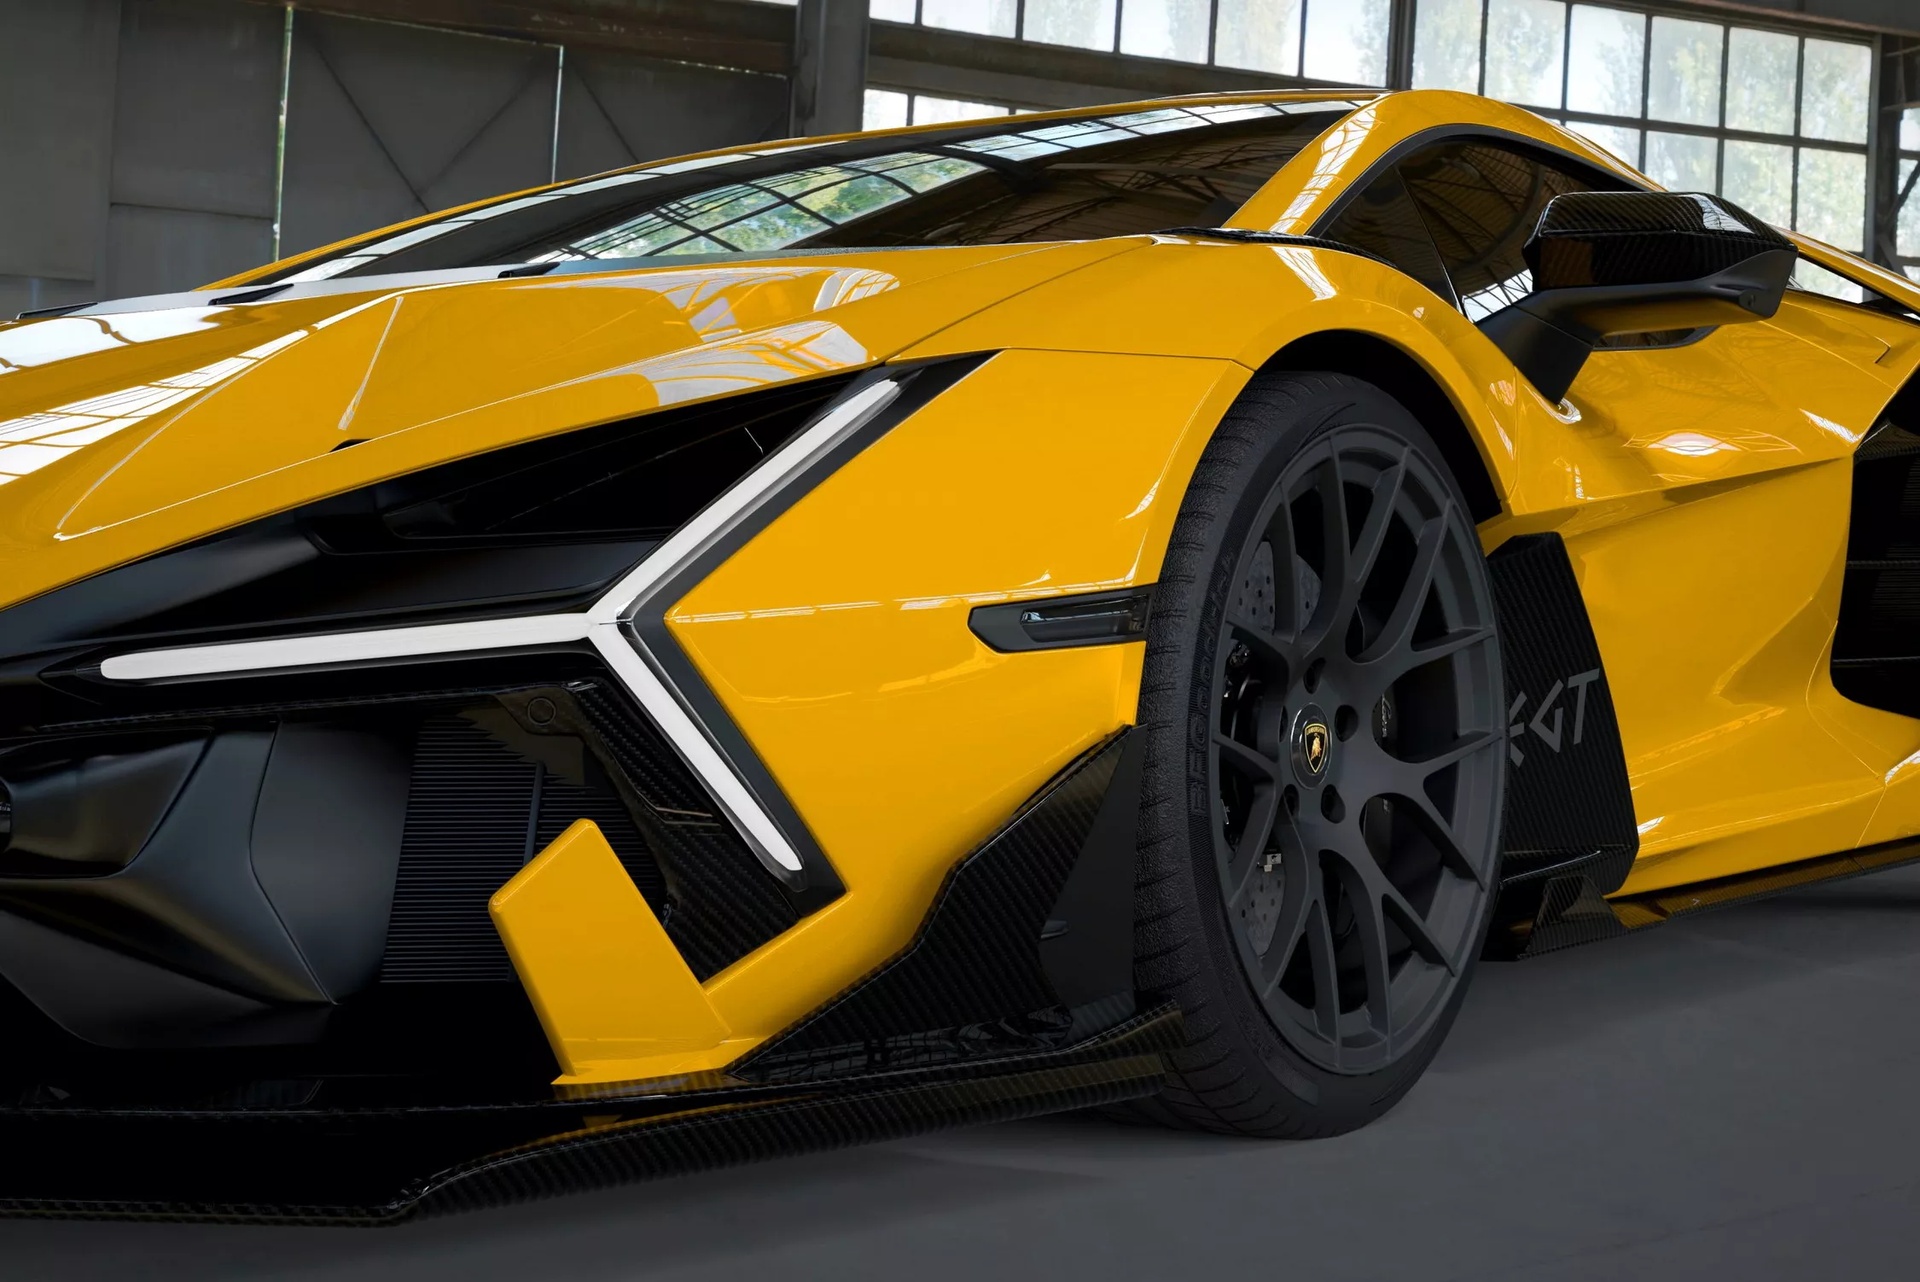 Lamborghini Revuelto DMC Edizione GT giá hơn 1 triệu USD